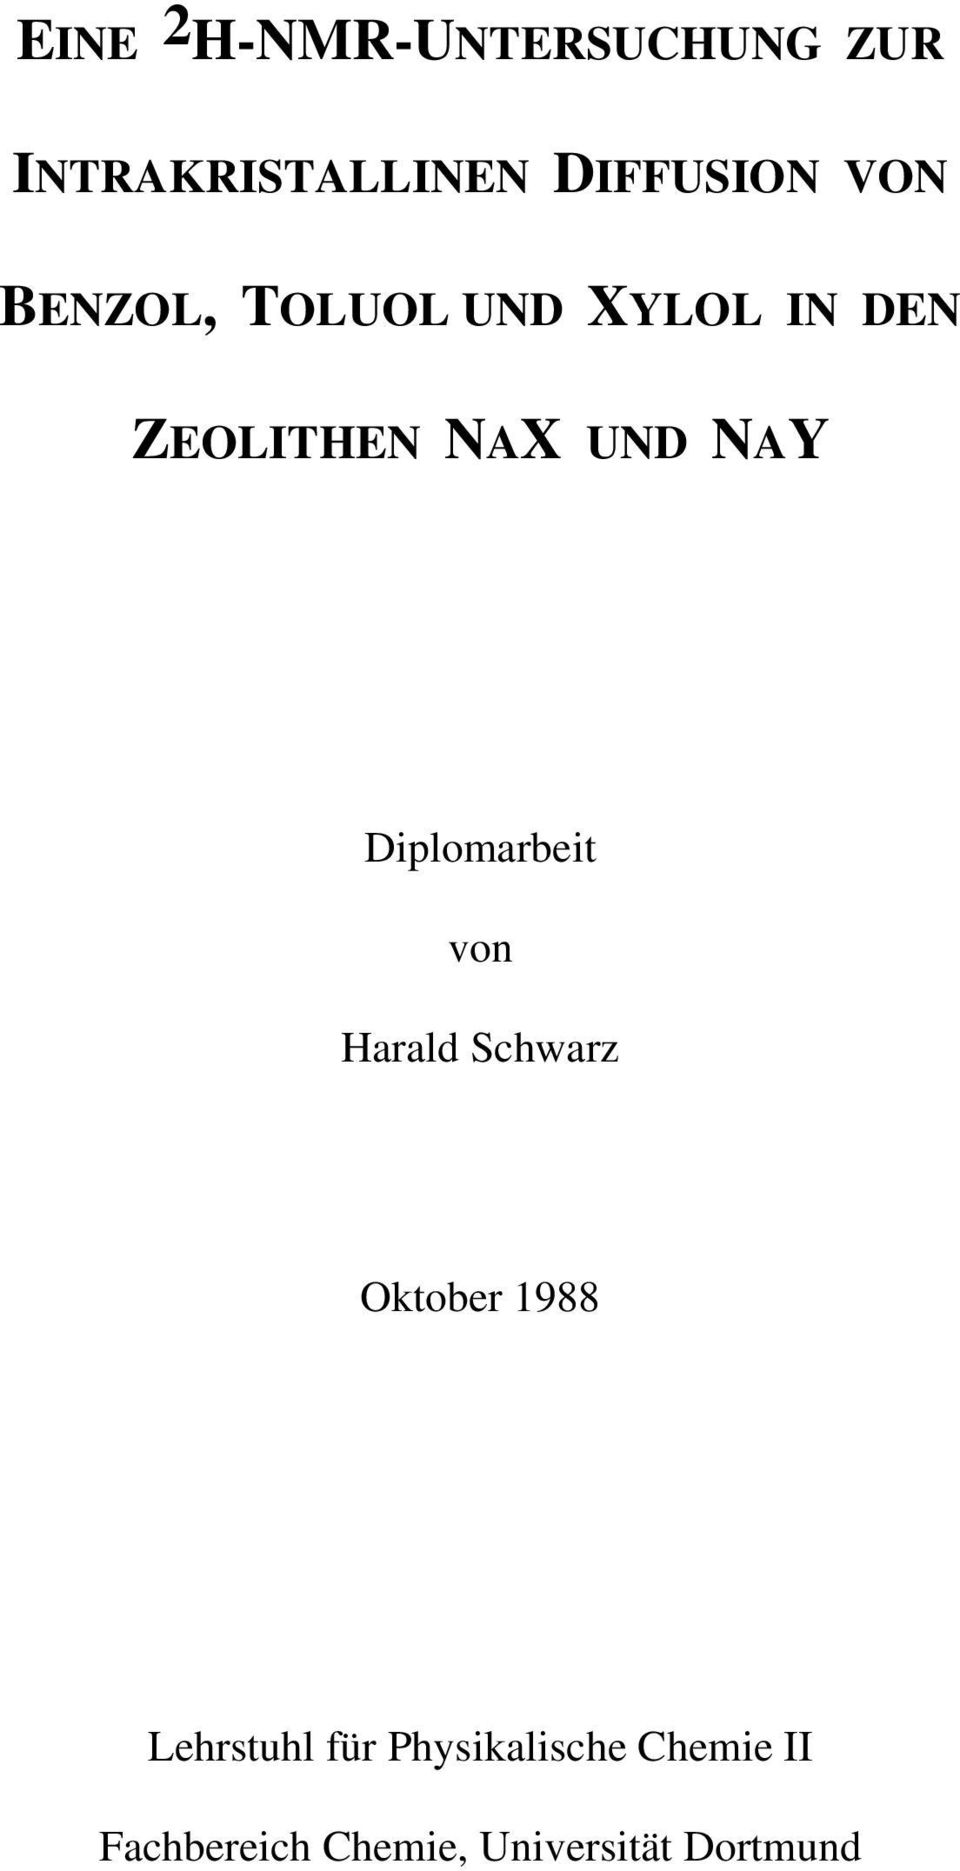 Diplomarbeit von Harald Schwarz Oktober 1988 Lehrstuhl für